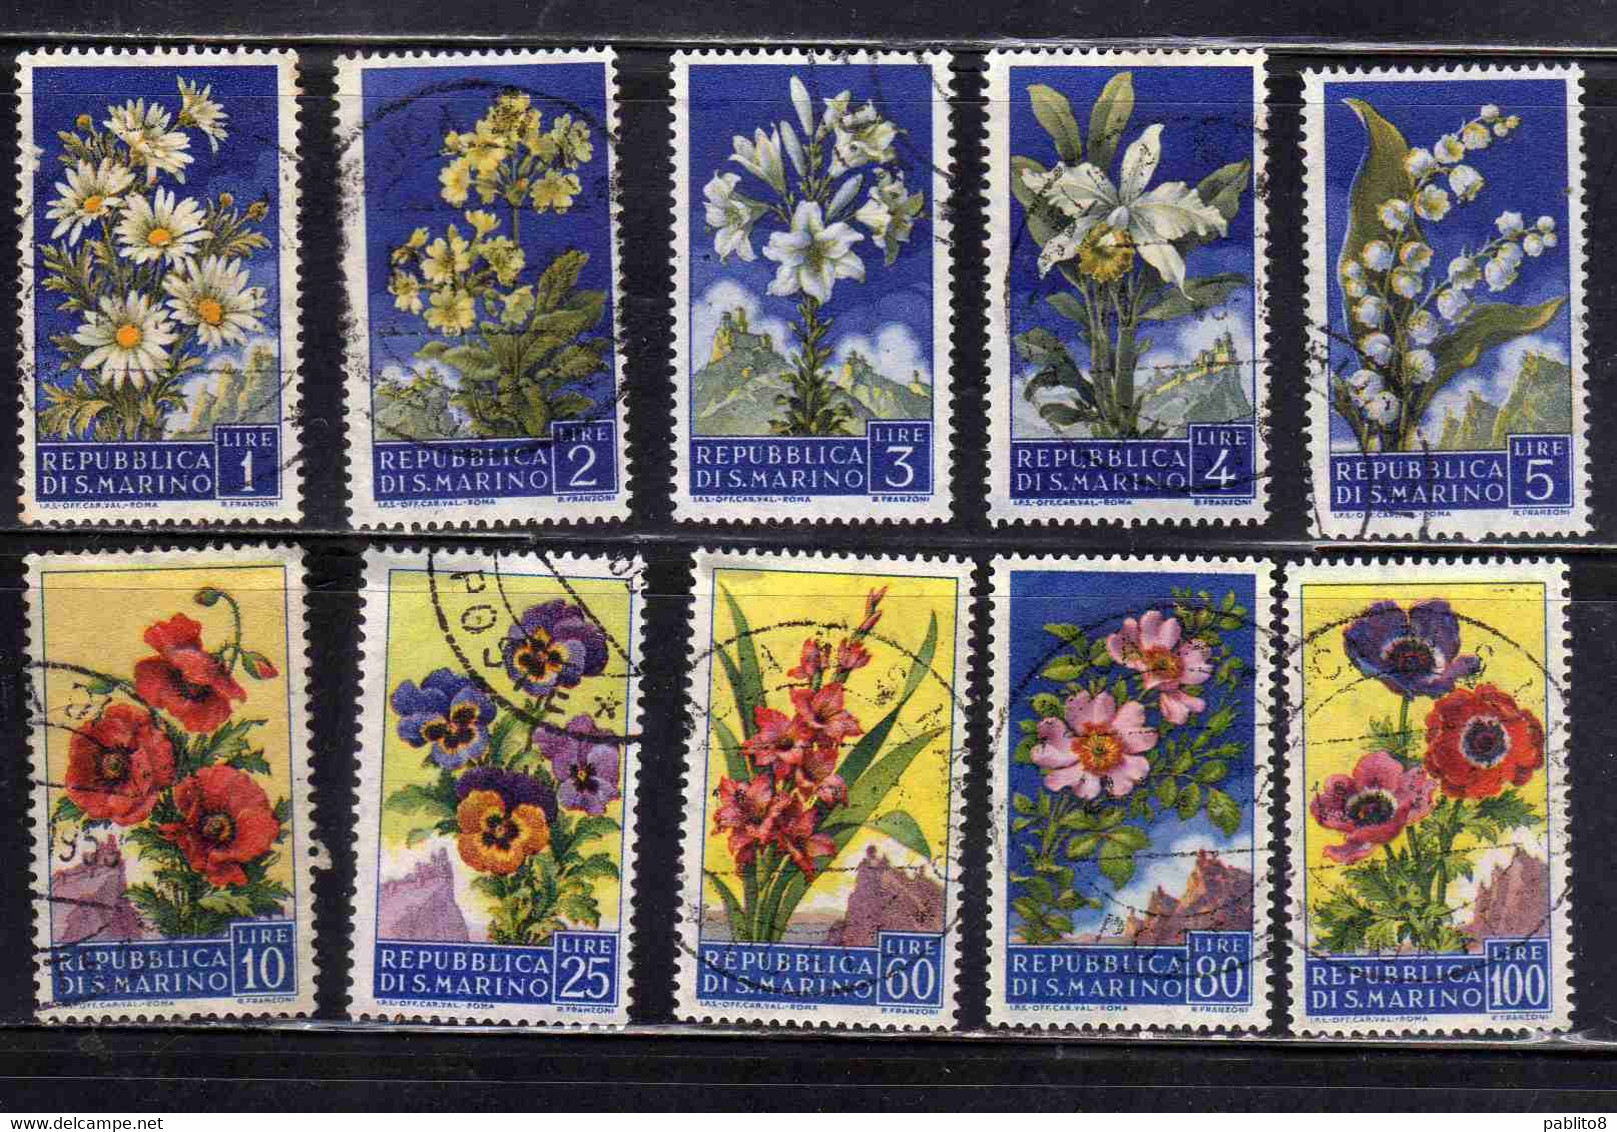 REPUBBLICA DI SAN MARINO 1957 FLORA FIORI 2 EMISSIONE FLOWERS SERIE COMPLETA COMPLETE SET USATA USED OBLITERE' - Used Stamps